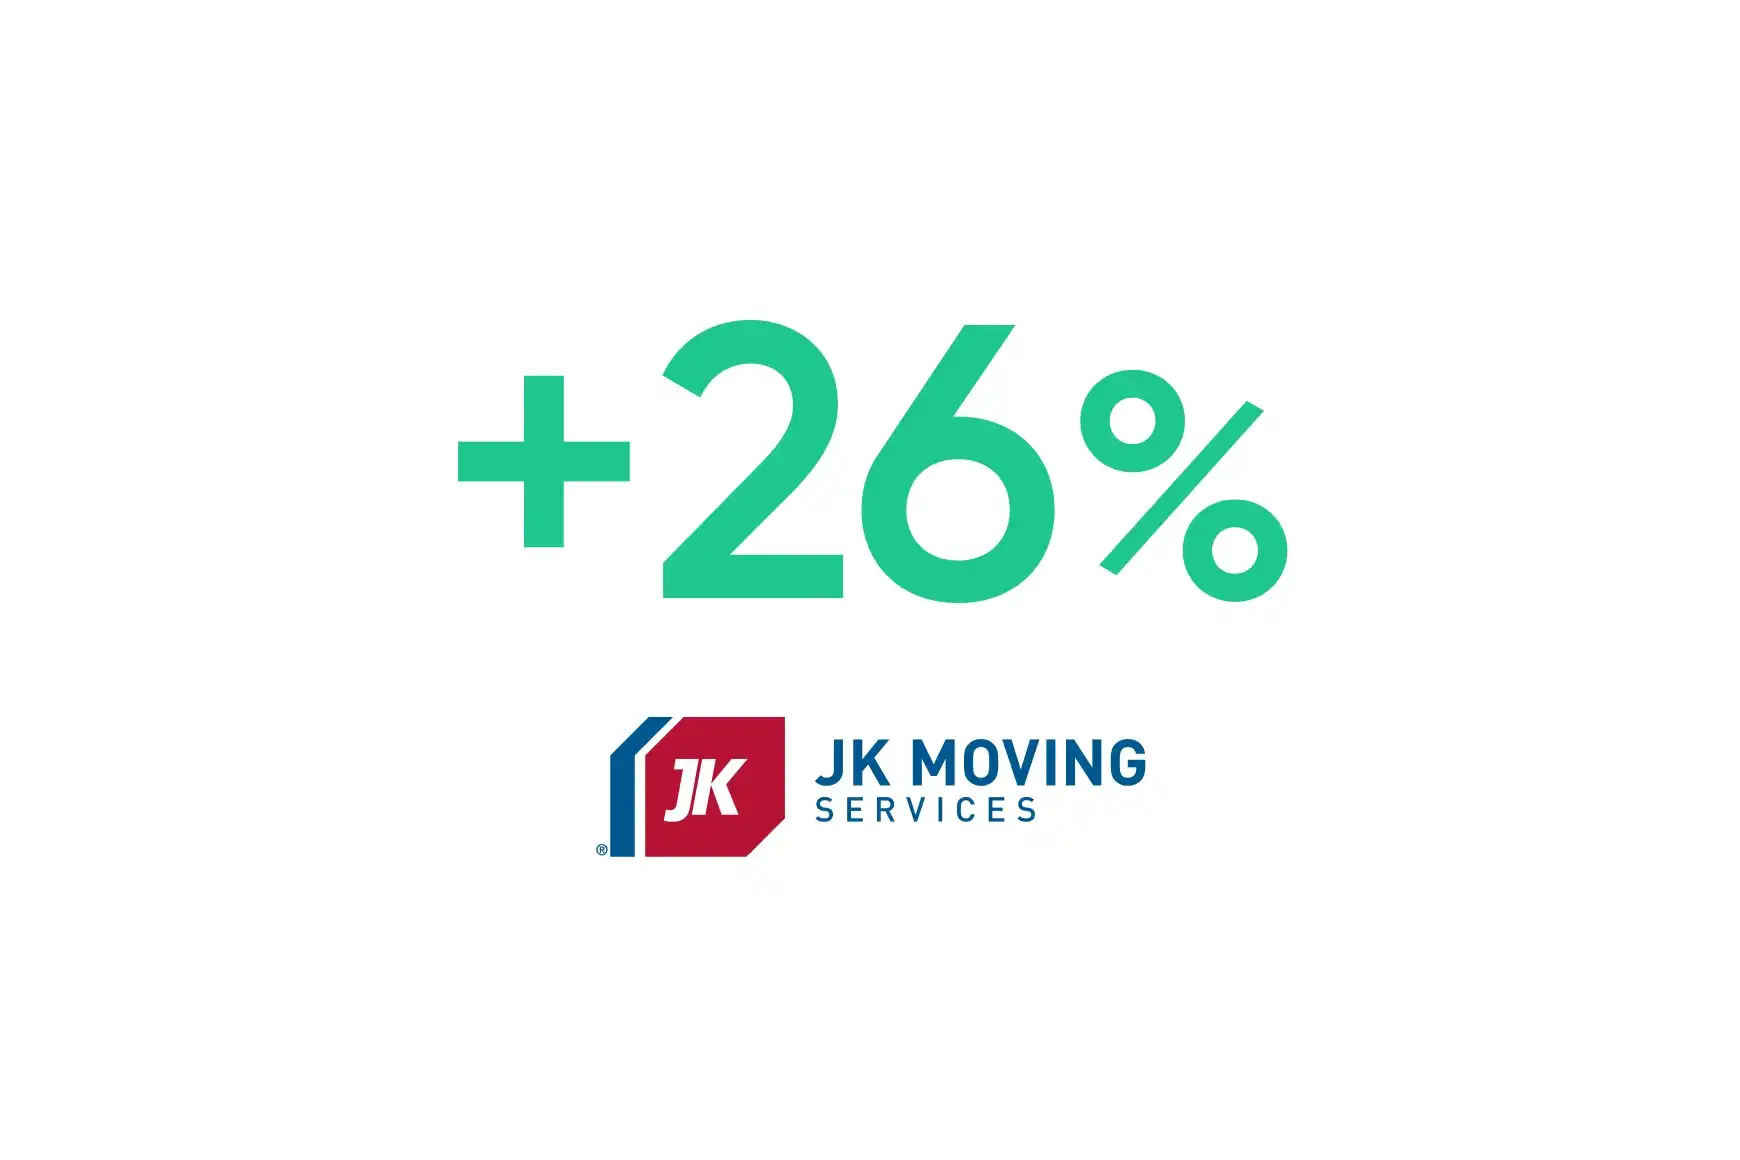 JK Moving Services: la optimización basada en IA aumenta la conversión de ventas en un 26 %